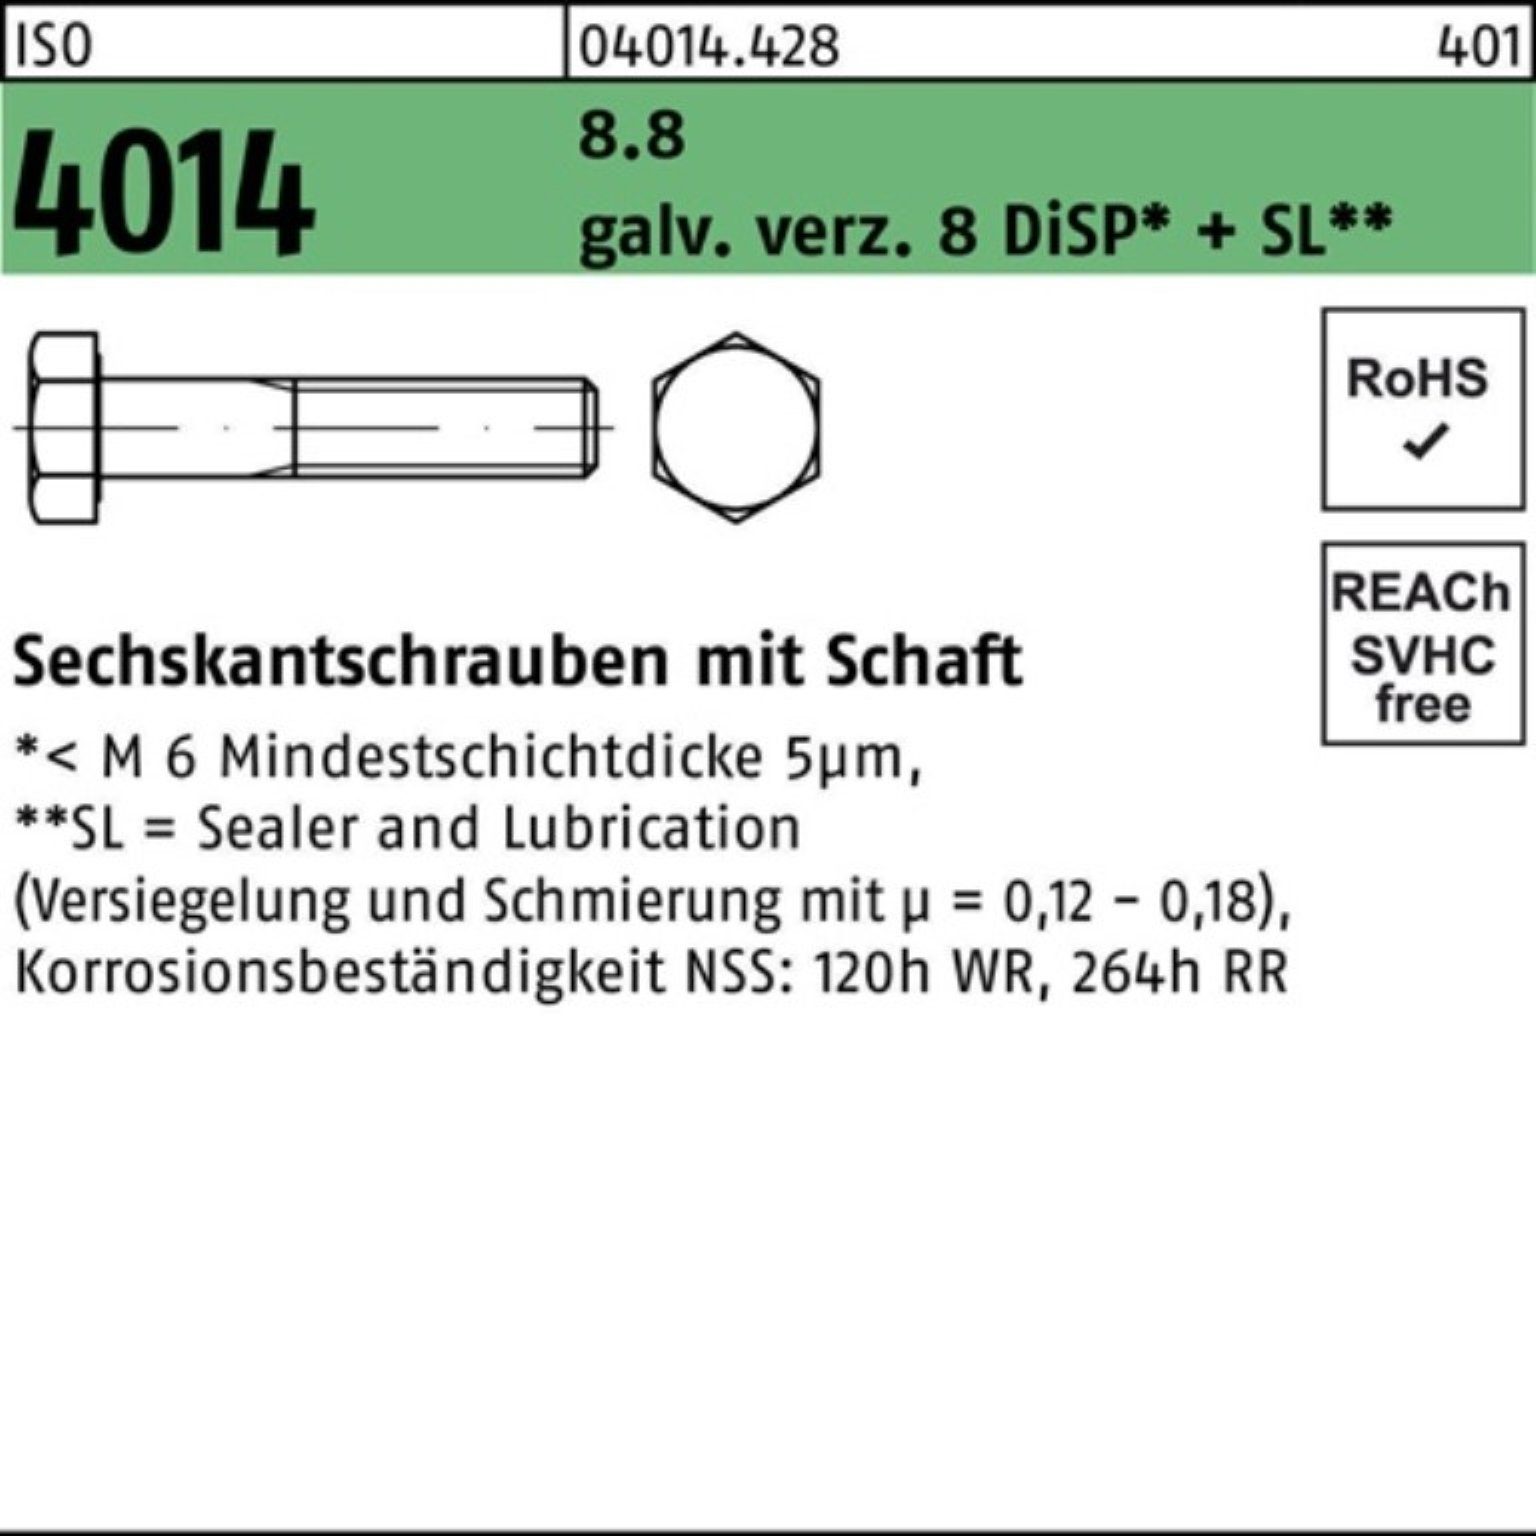 Sechskantschraube 8.8 100er 4014 M14x80 8 D Pack Schaft ISO galv.verz. Sechskantschraube Bufab